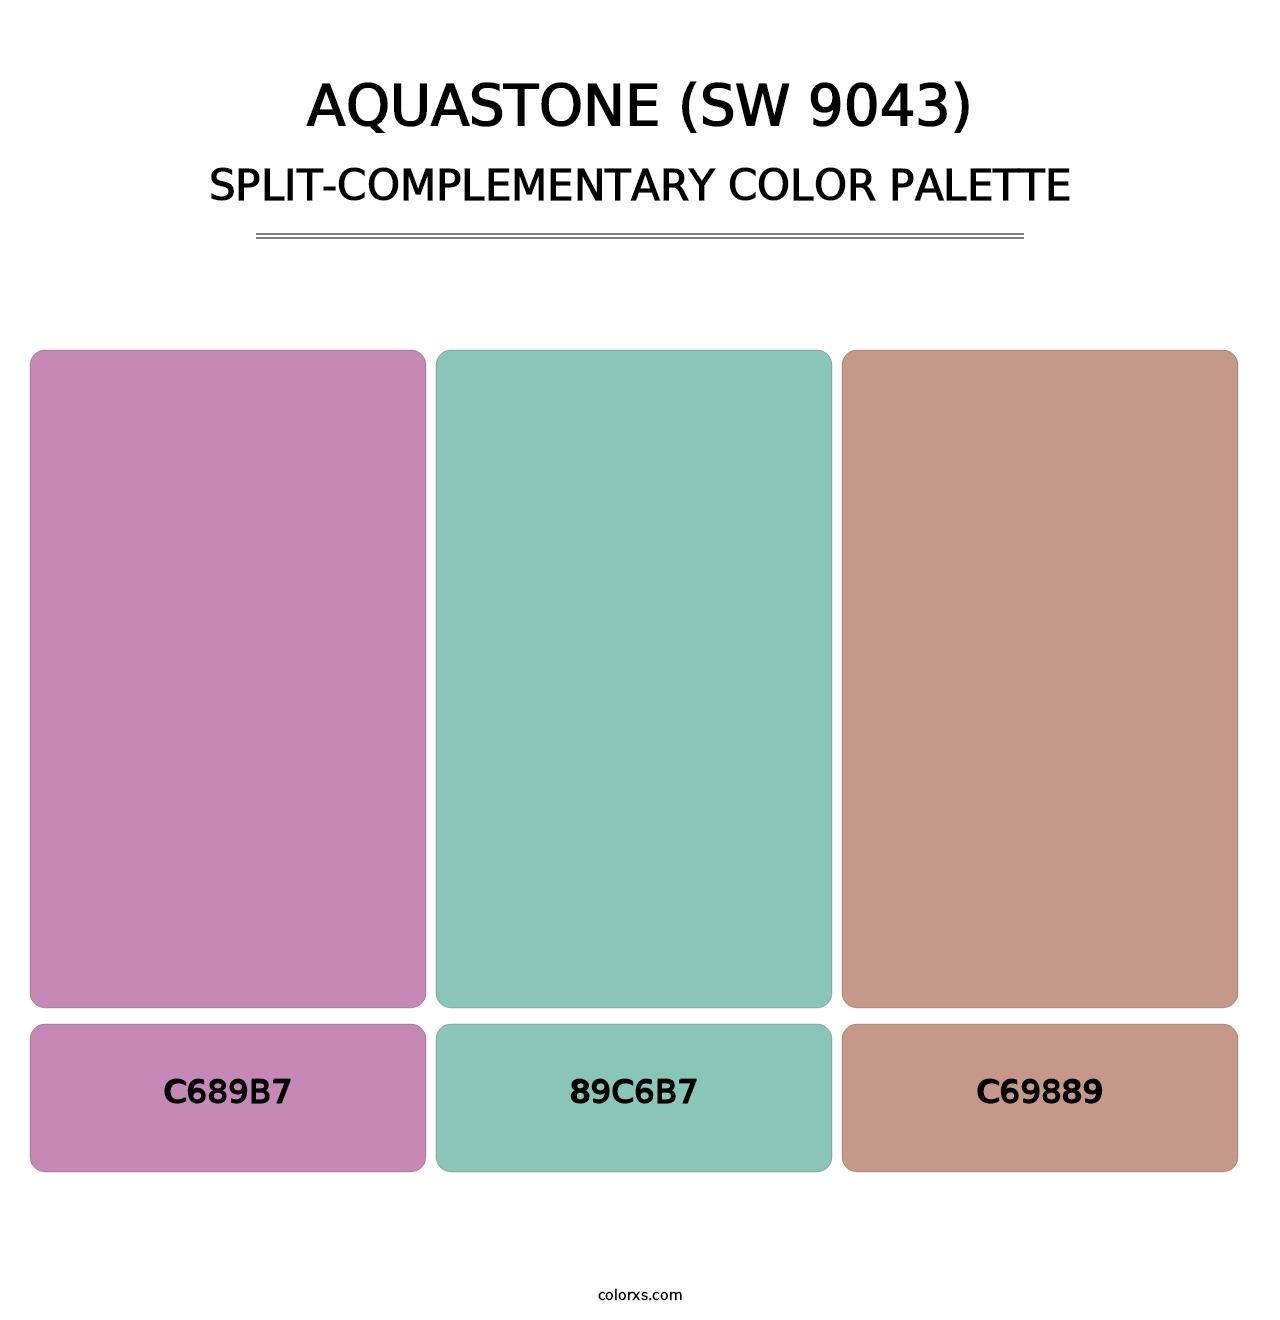 Aquastone (SW 9043) - Split-Complementary Color Palette